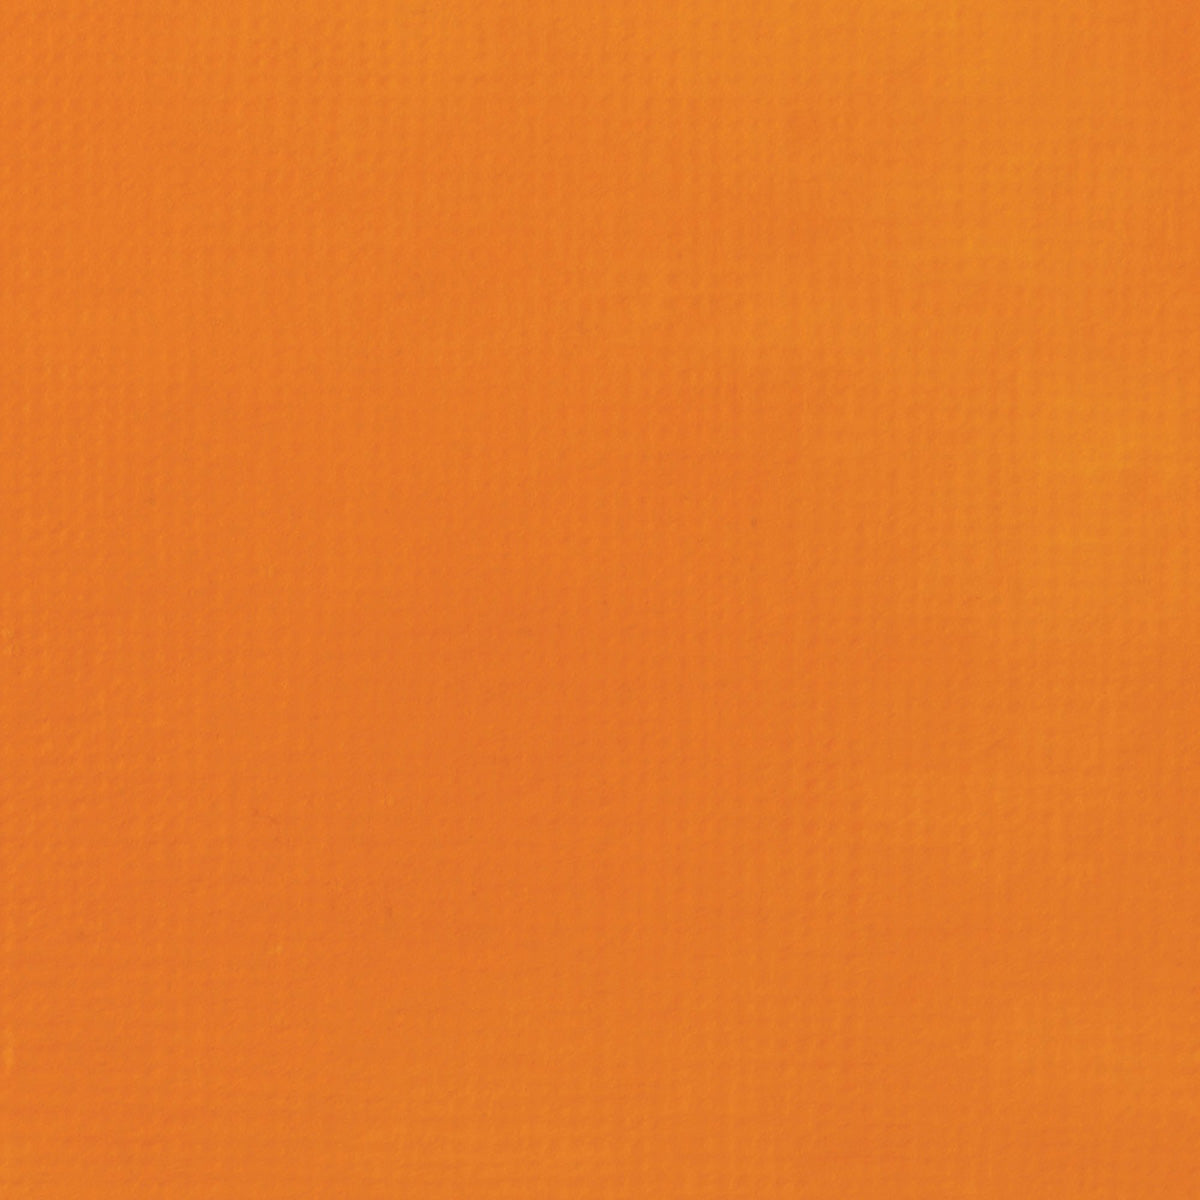 Liqitex Basics Fluid Acryl 118ml - Cadmium Orange Hue S1